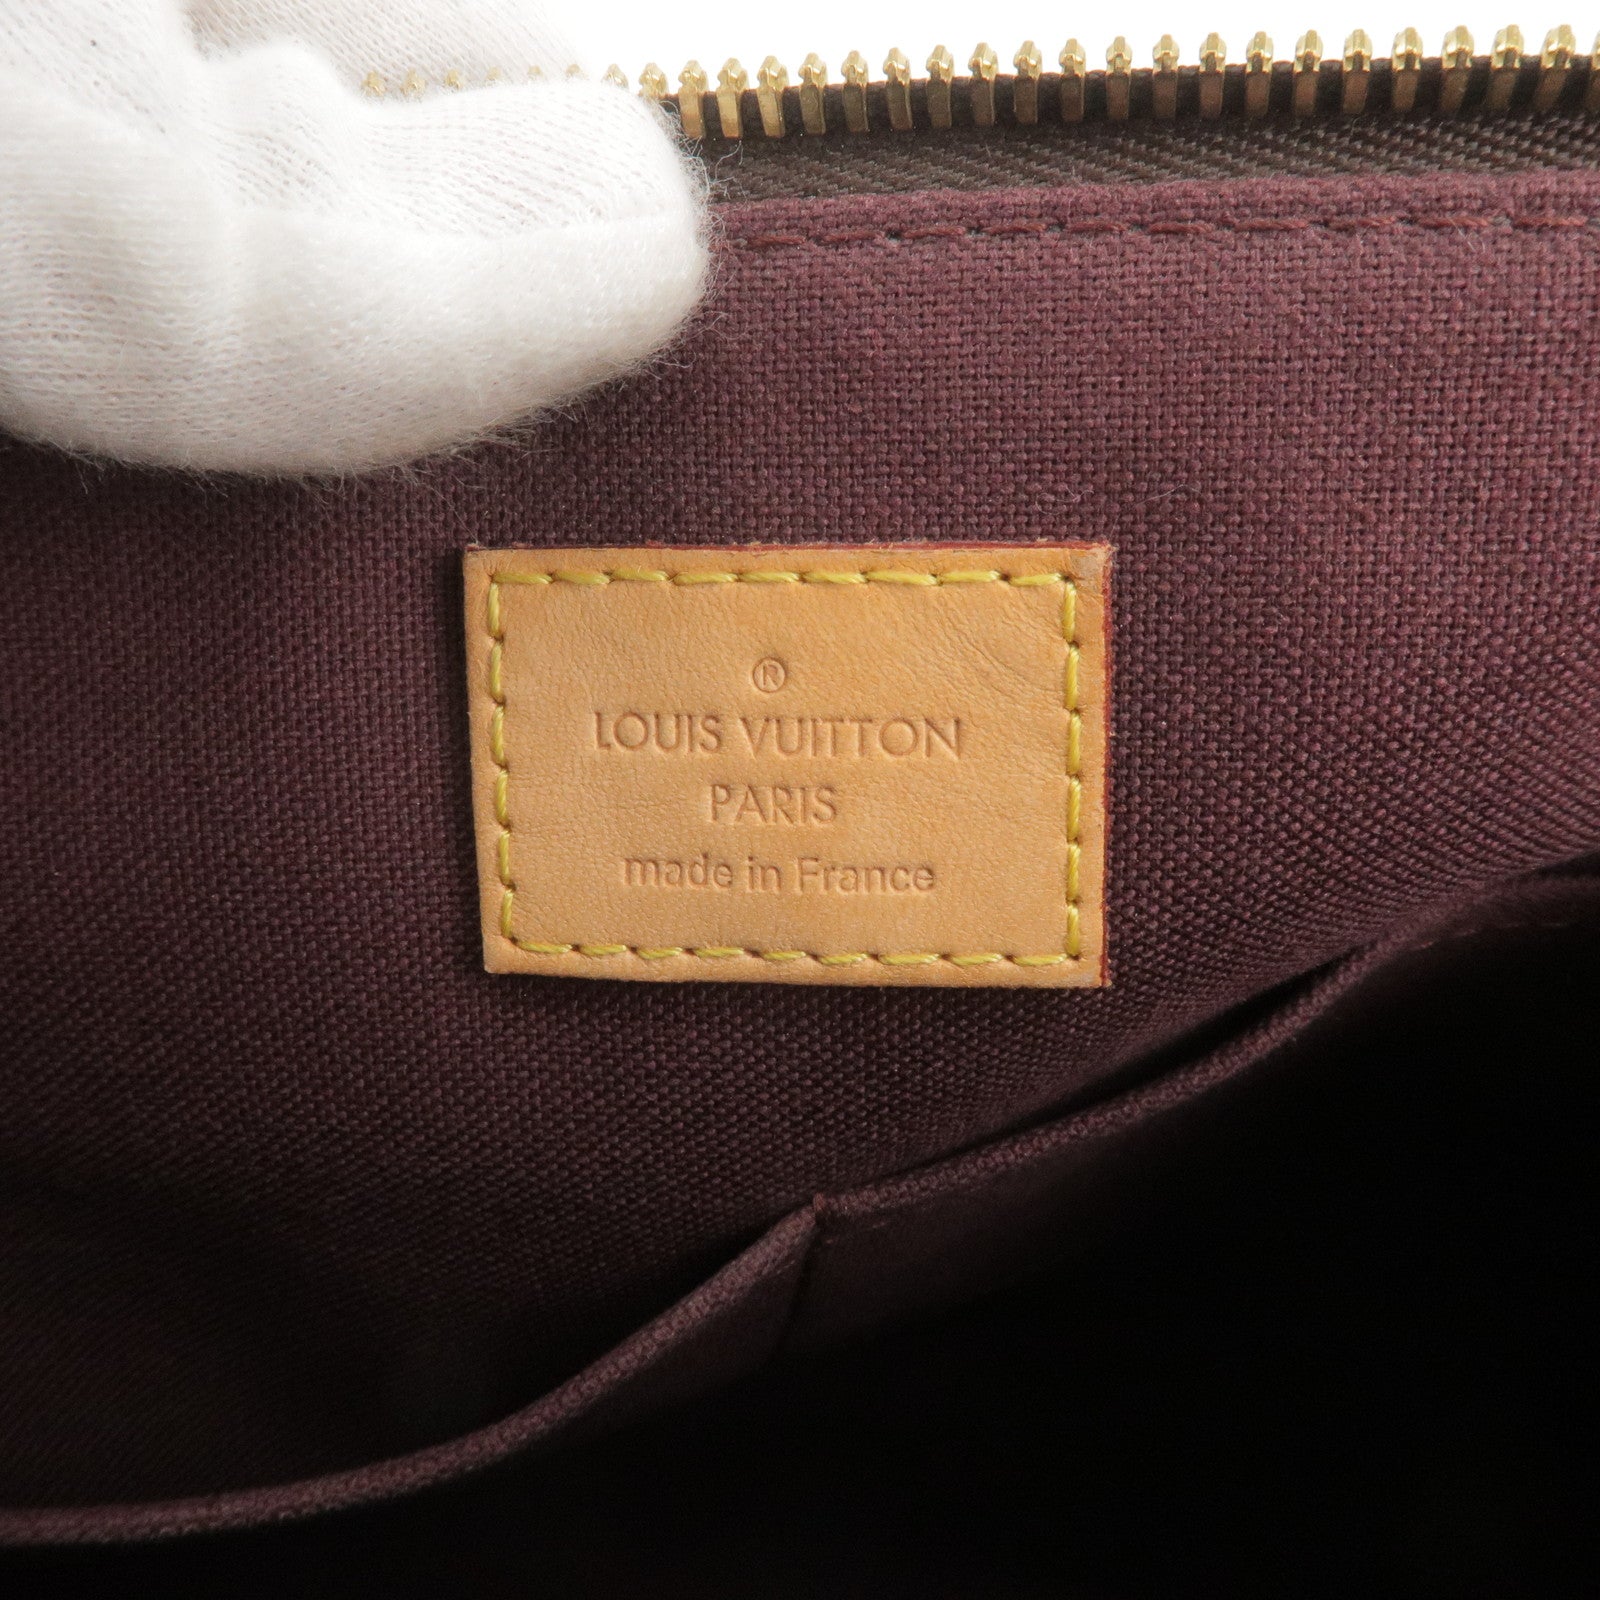 Louis Vuitton Black Epi Leather Turenne GM Bag Louis Vuitton